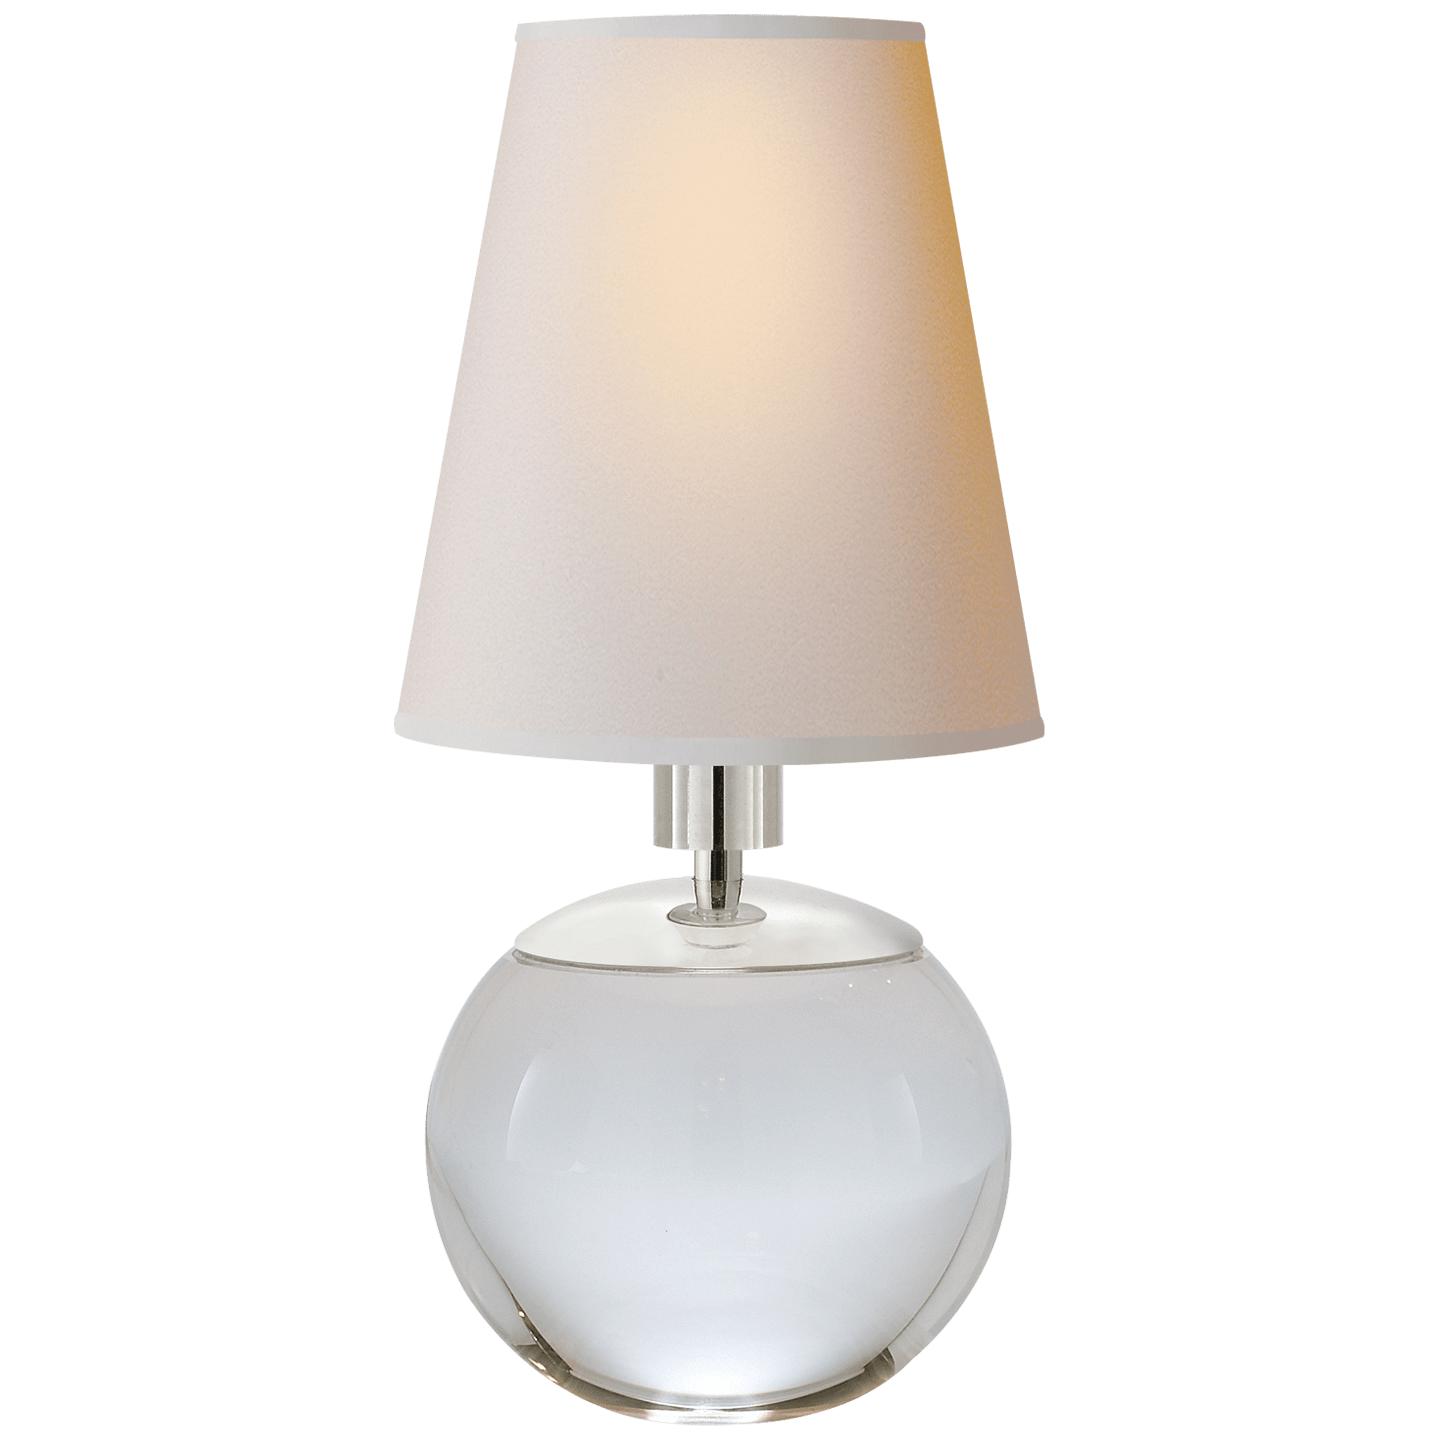 Купить Настольная лампа Tiny Terri Round Accent Lamp в интернет-магазине roooms.ru